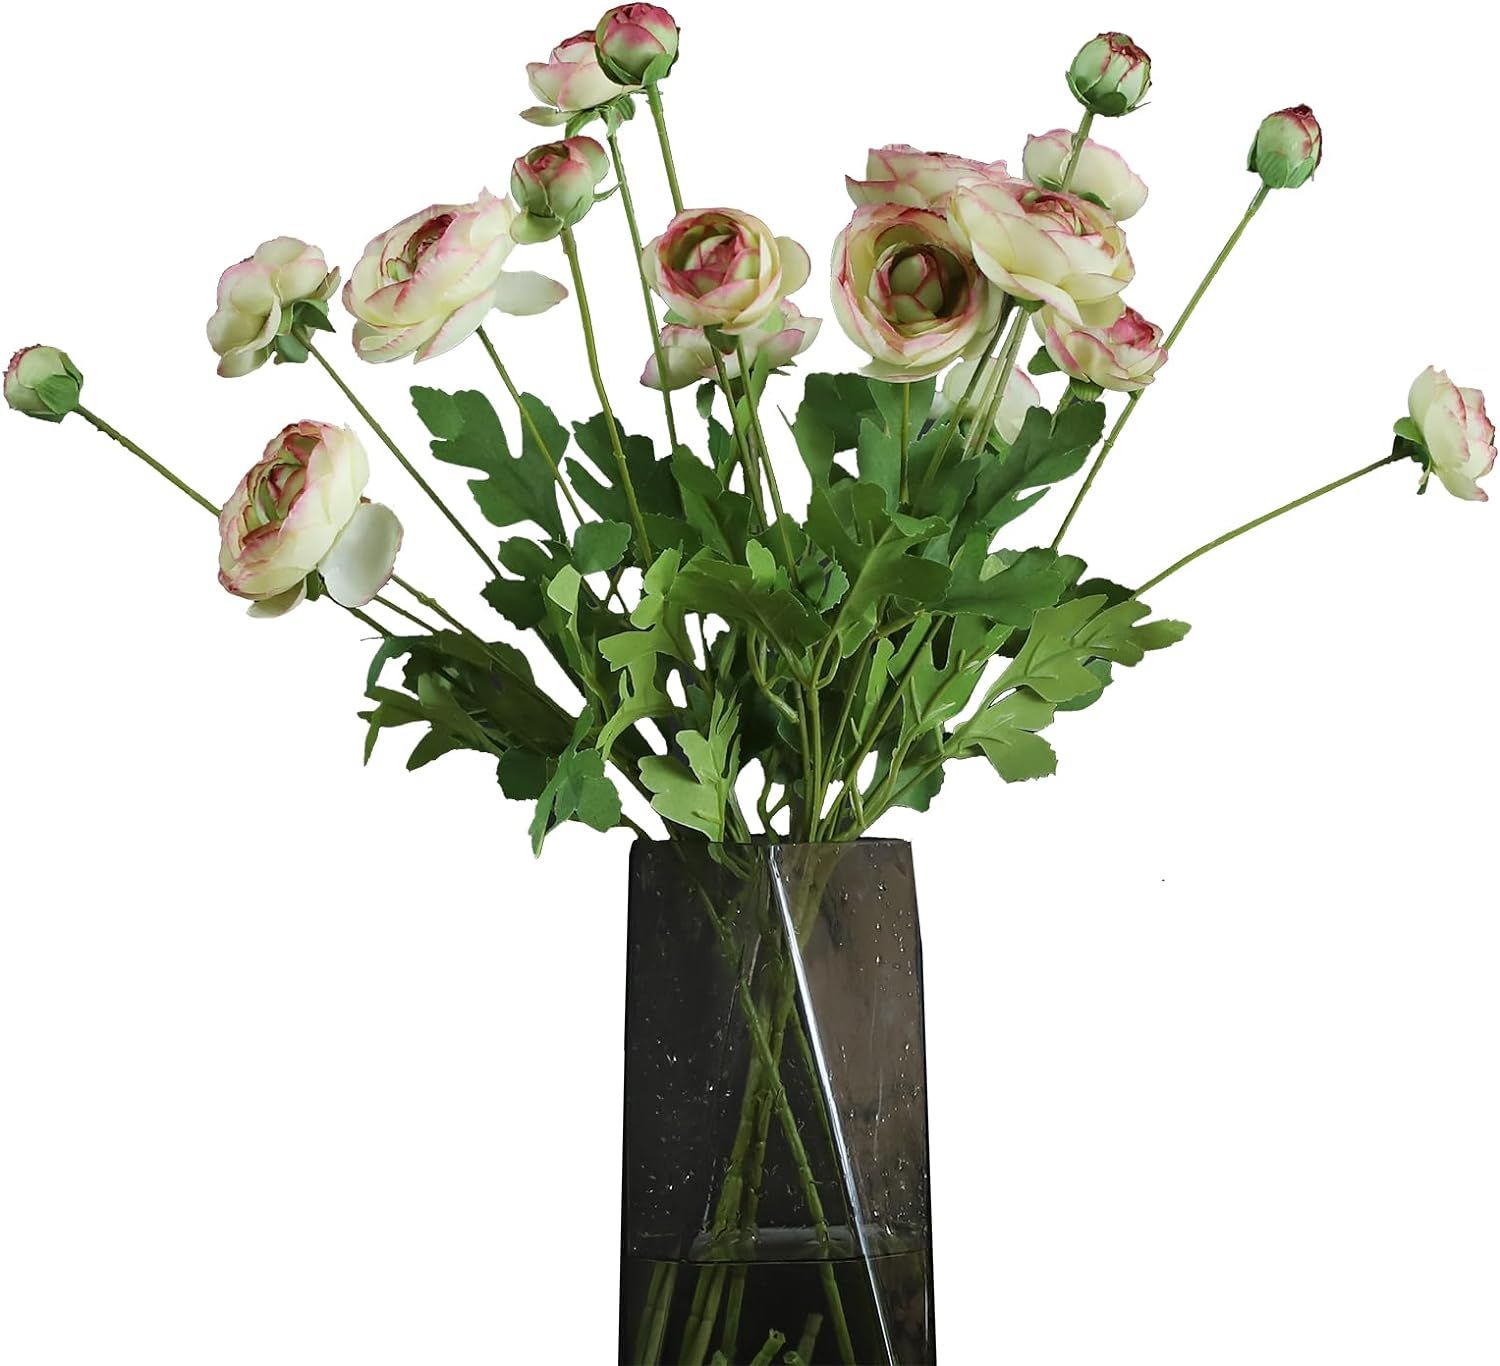 GLSATEMAN Artificial Silk Flowers Persian Buttercup Bicolor Ranunculus Flower 5 Pcs,Suitable for ... | Amazon (US)